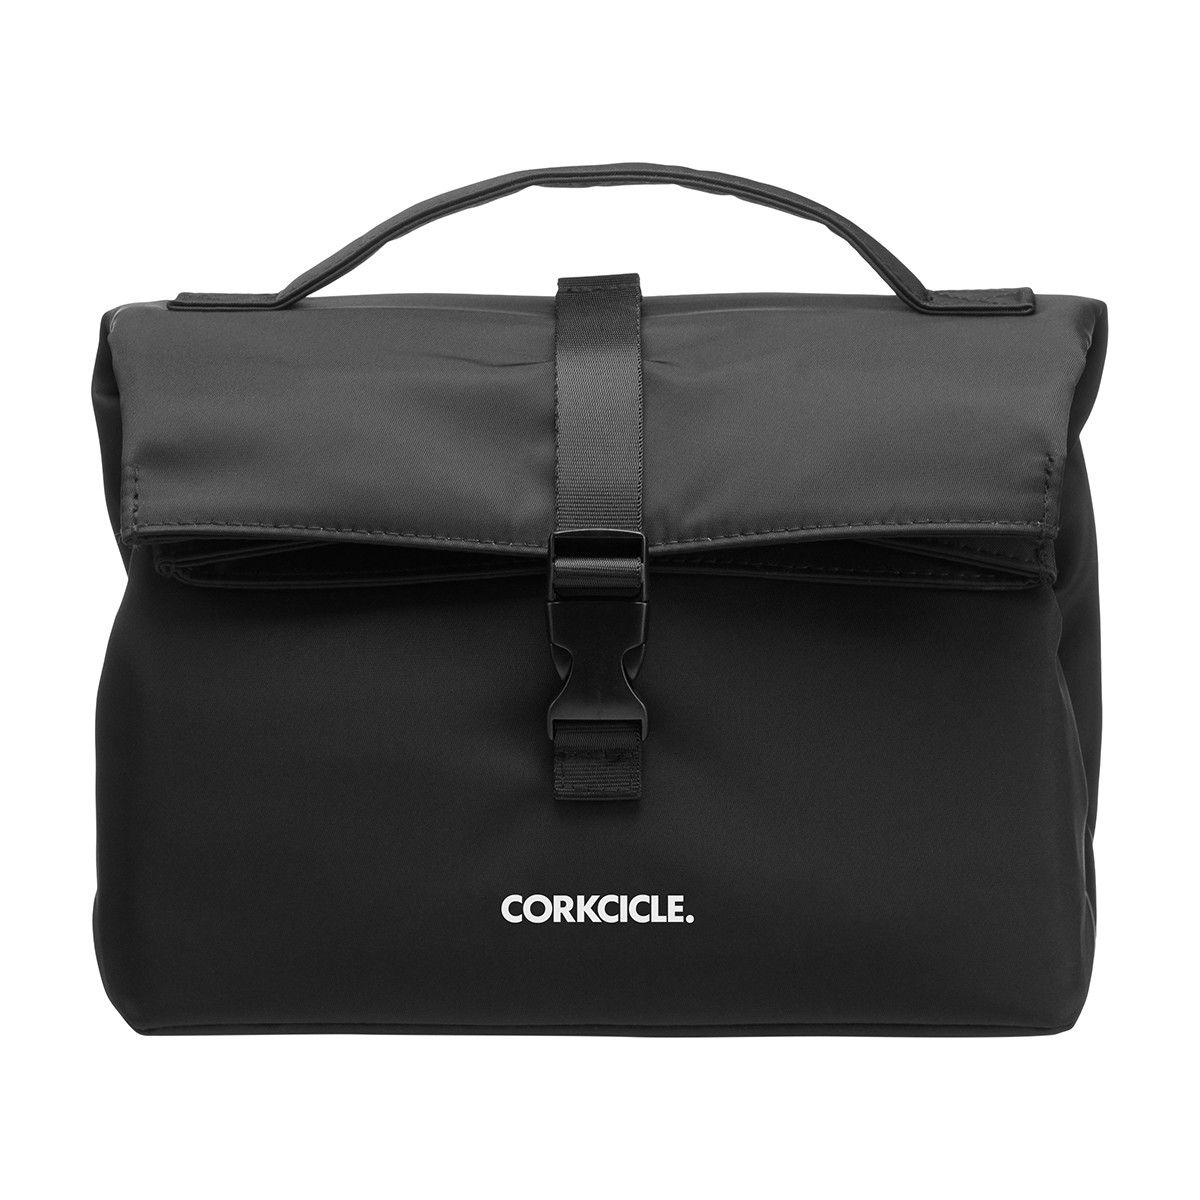 CORKCICLE Cooler Bag Nona Roll-Top - Olive Lunch Bag